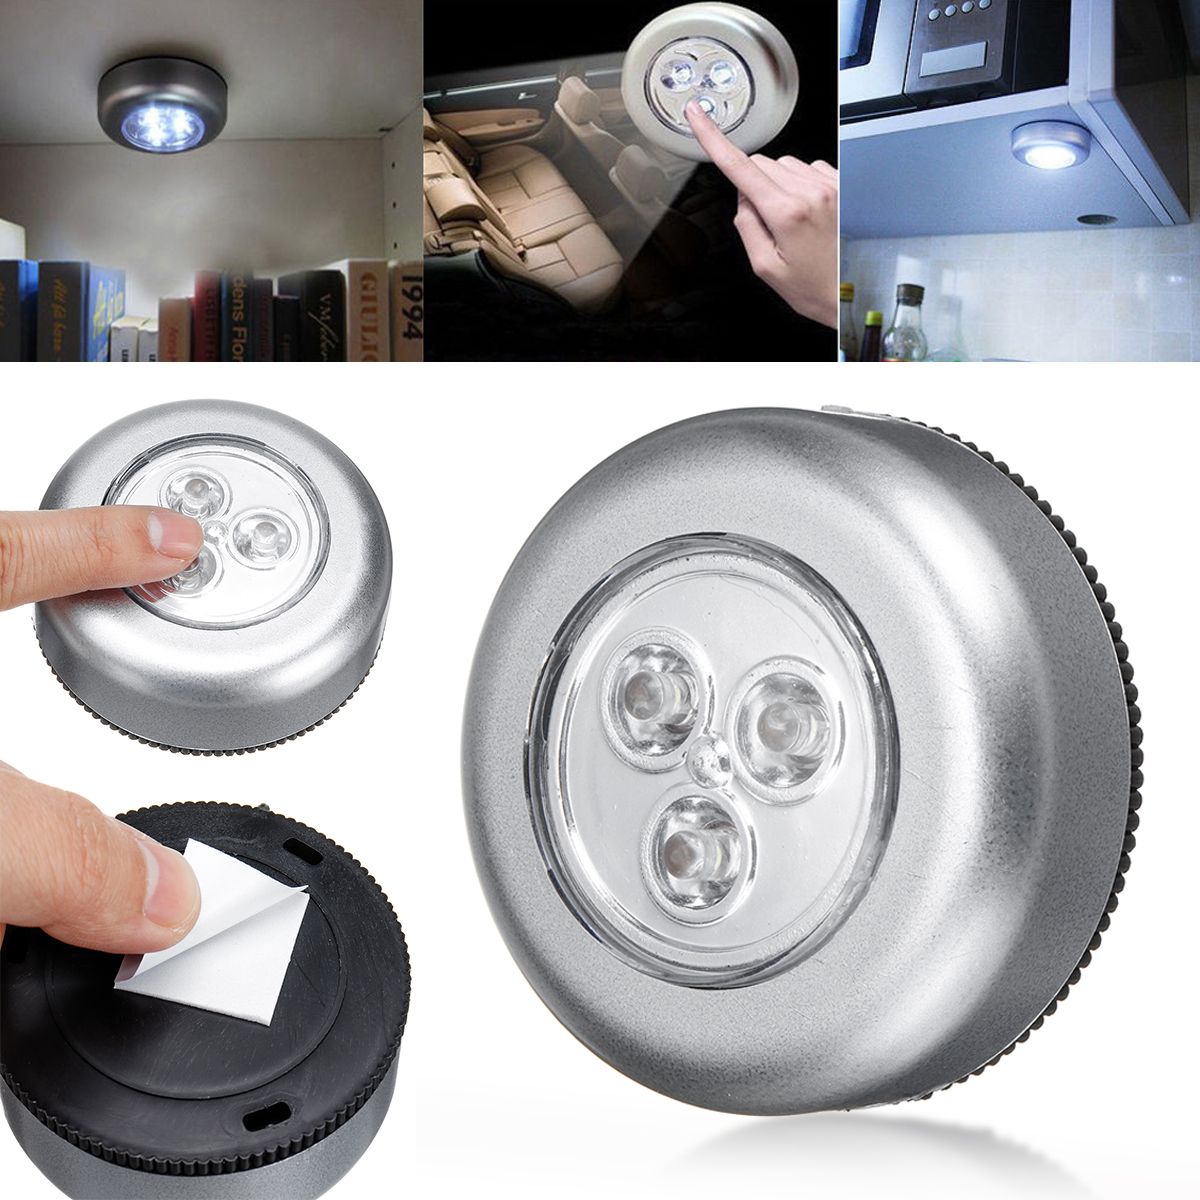 5pcs-Wireless-LED-Night-Light-Stick-Closet-Cabinet-Kitchen-Lamp-Battery-Powered-1697162